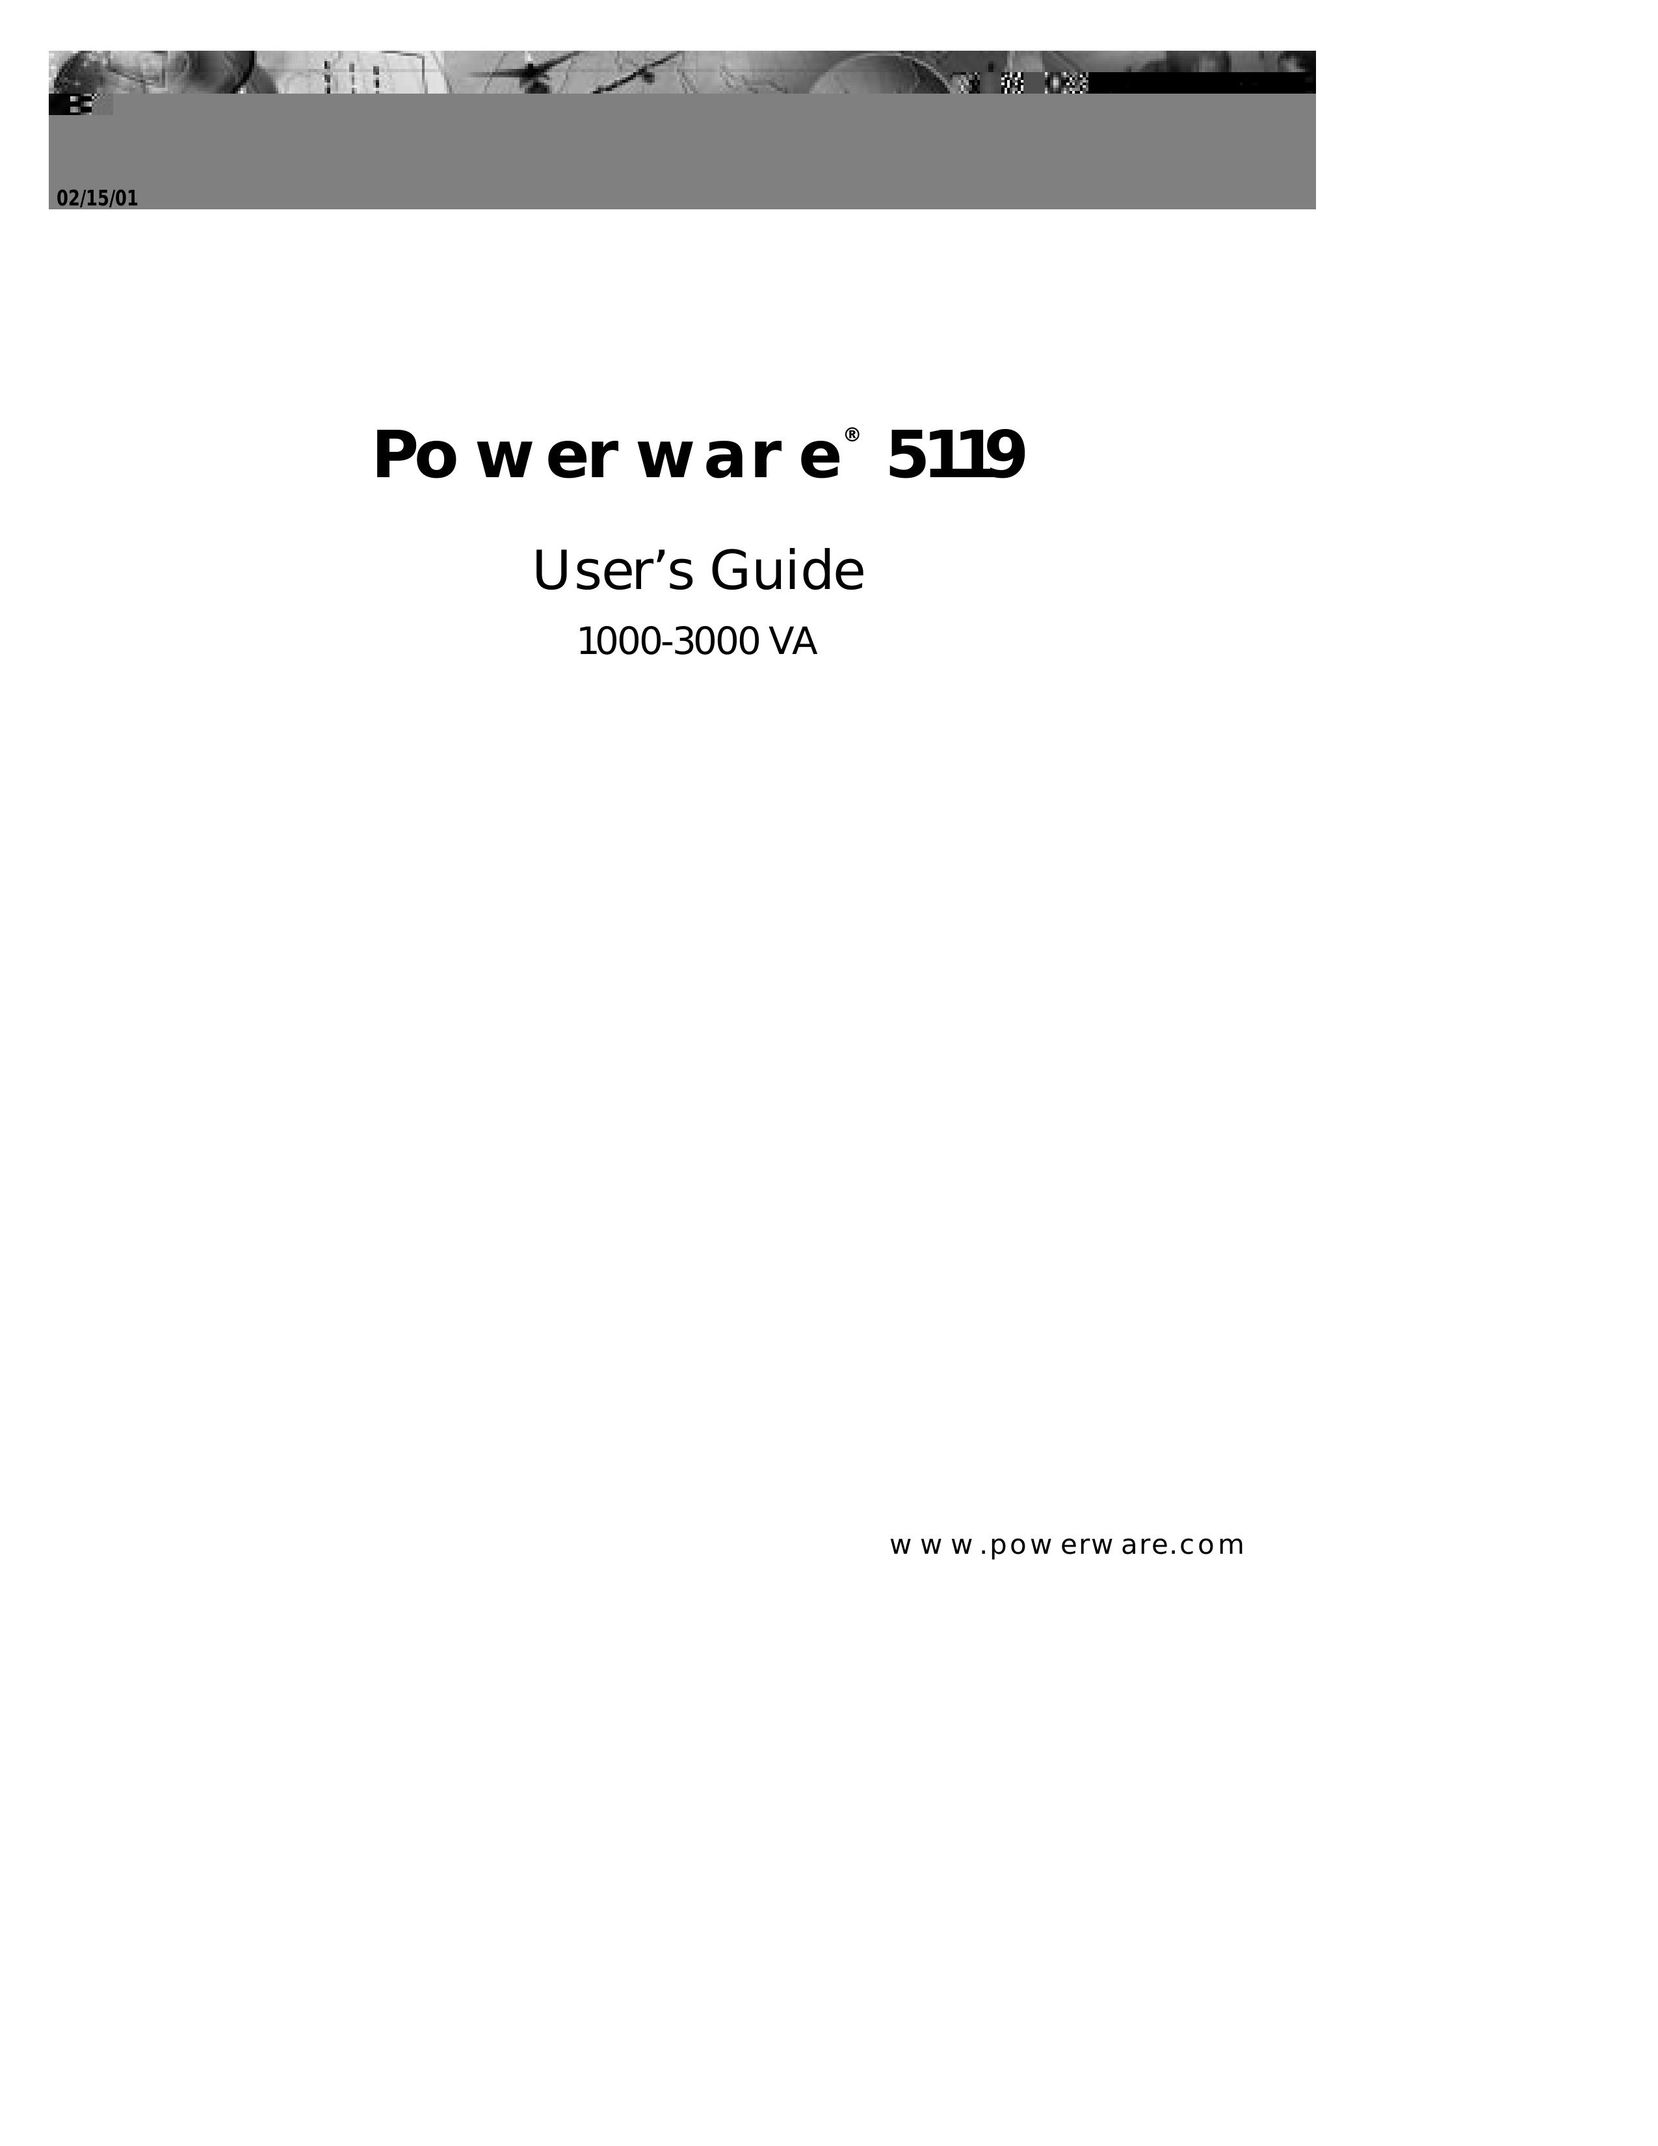 Powerware Powerware 5119 Network Card User Manual